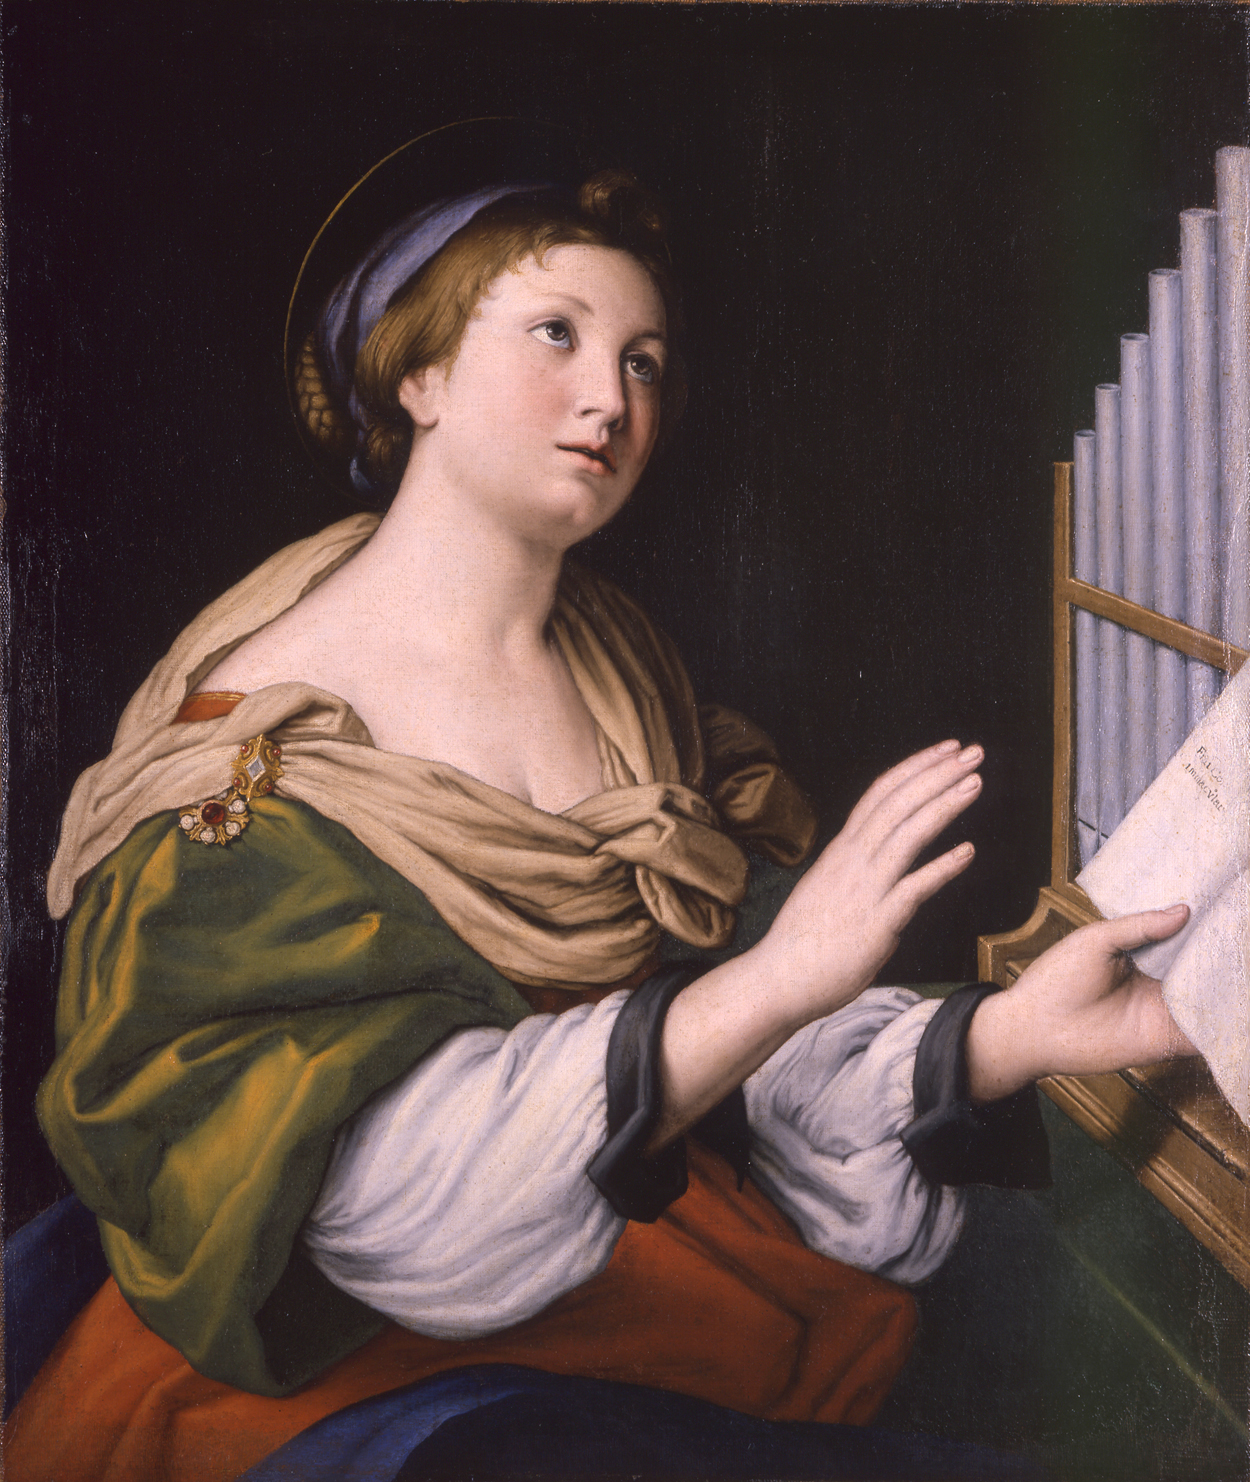 Святая Цецилия (Saint Cecilia) by  Иль Сассоферрато - 1635-1650 - 73.8 x 62.2 см 